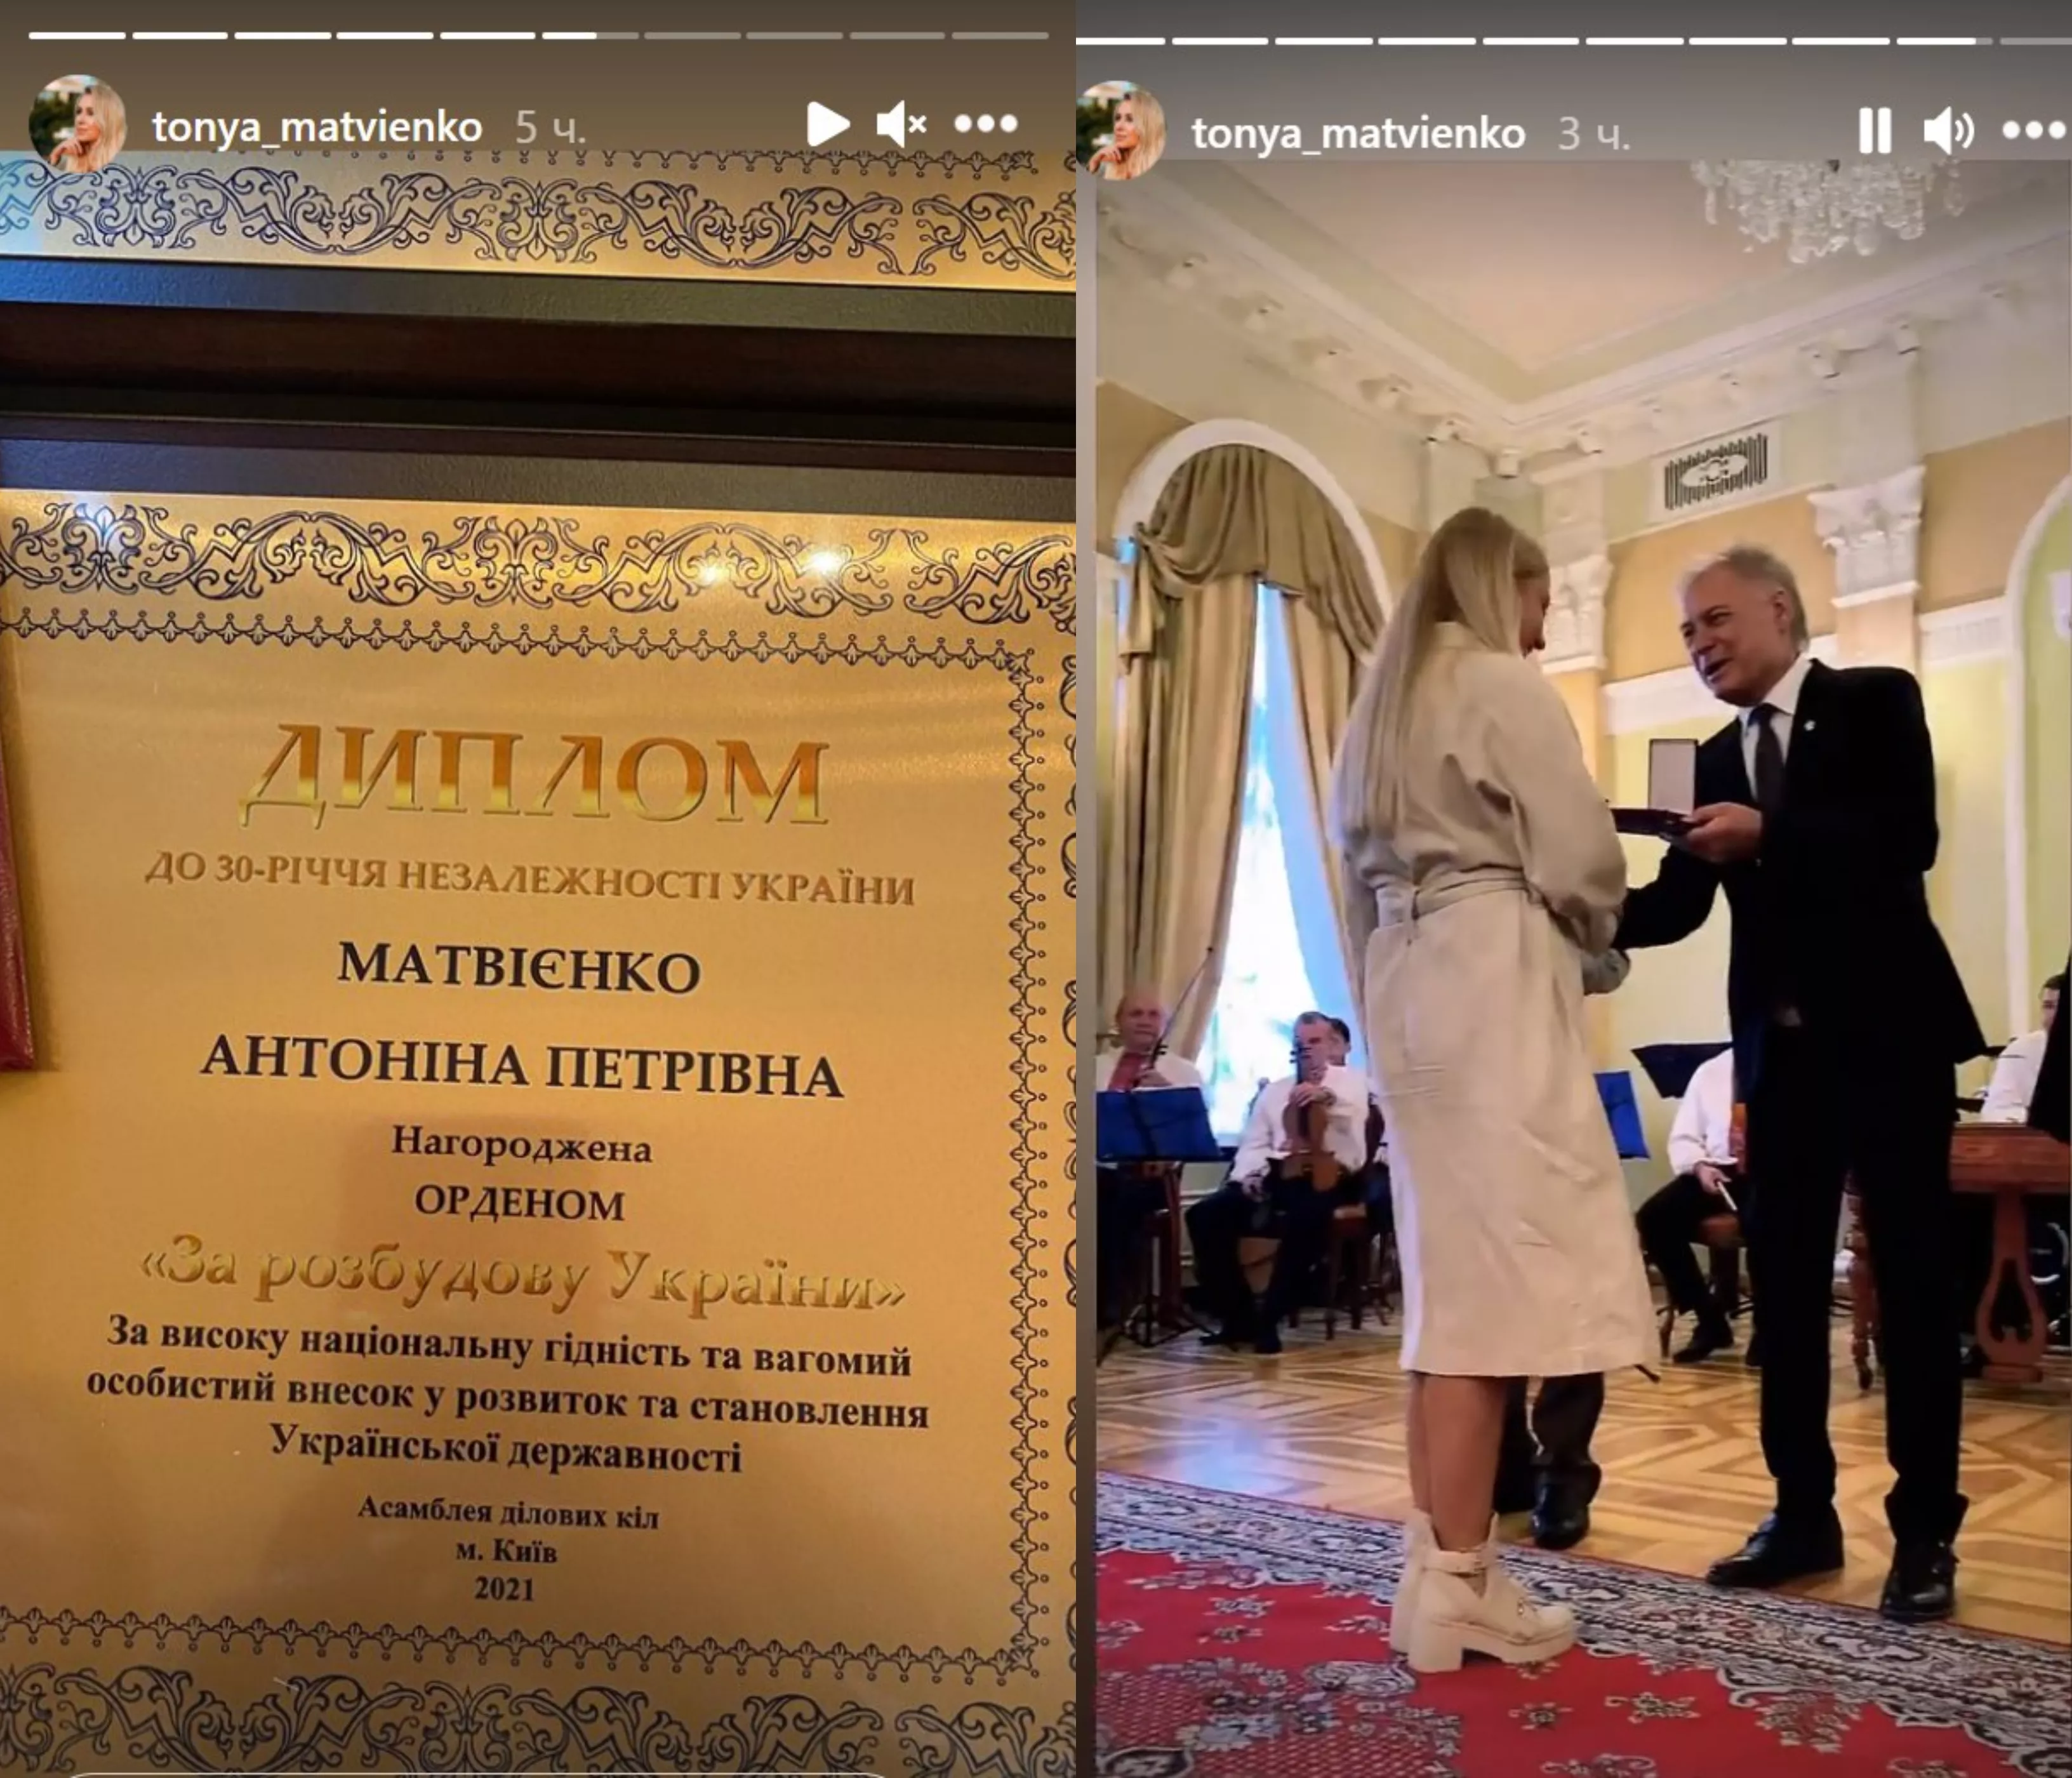 Тоня Матвиенко на церемонии награждения в Мариинском дворце